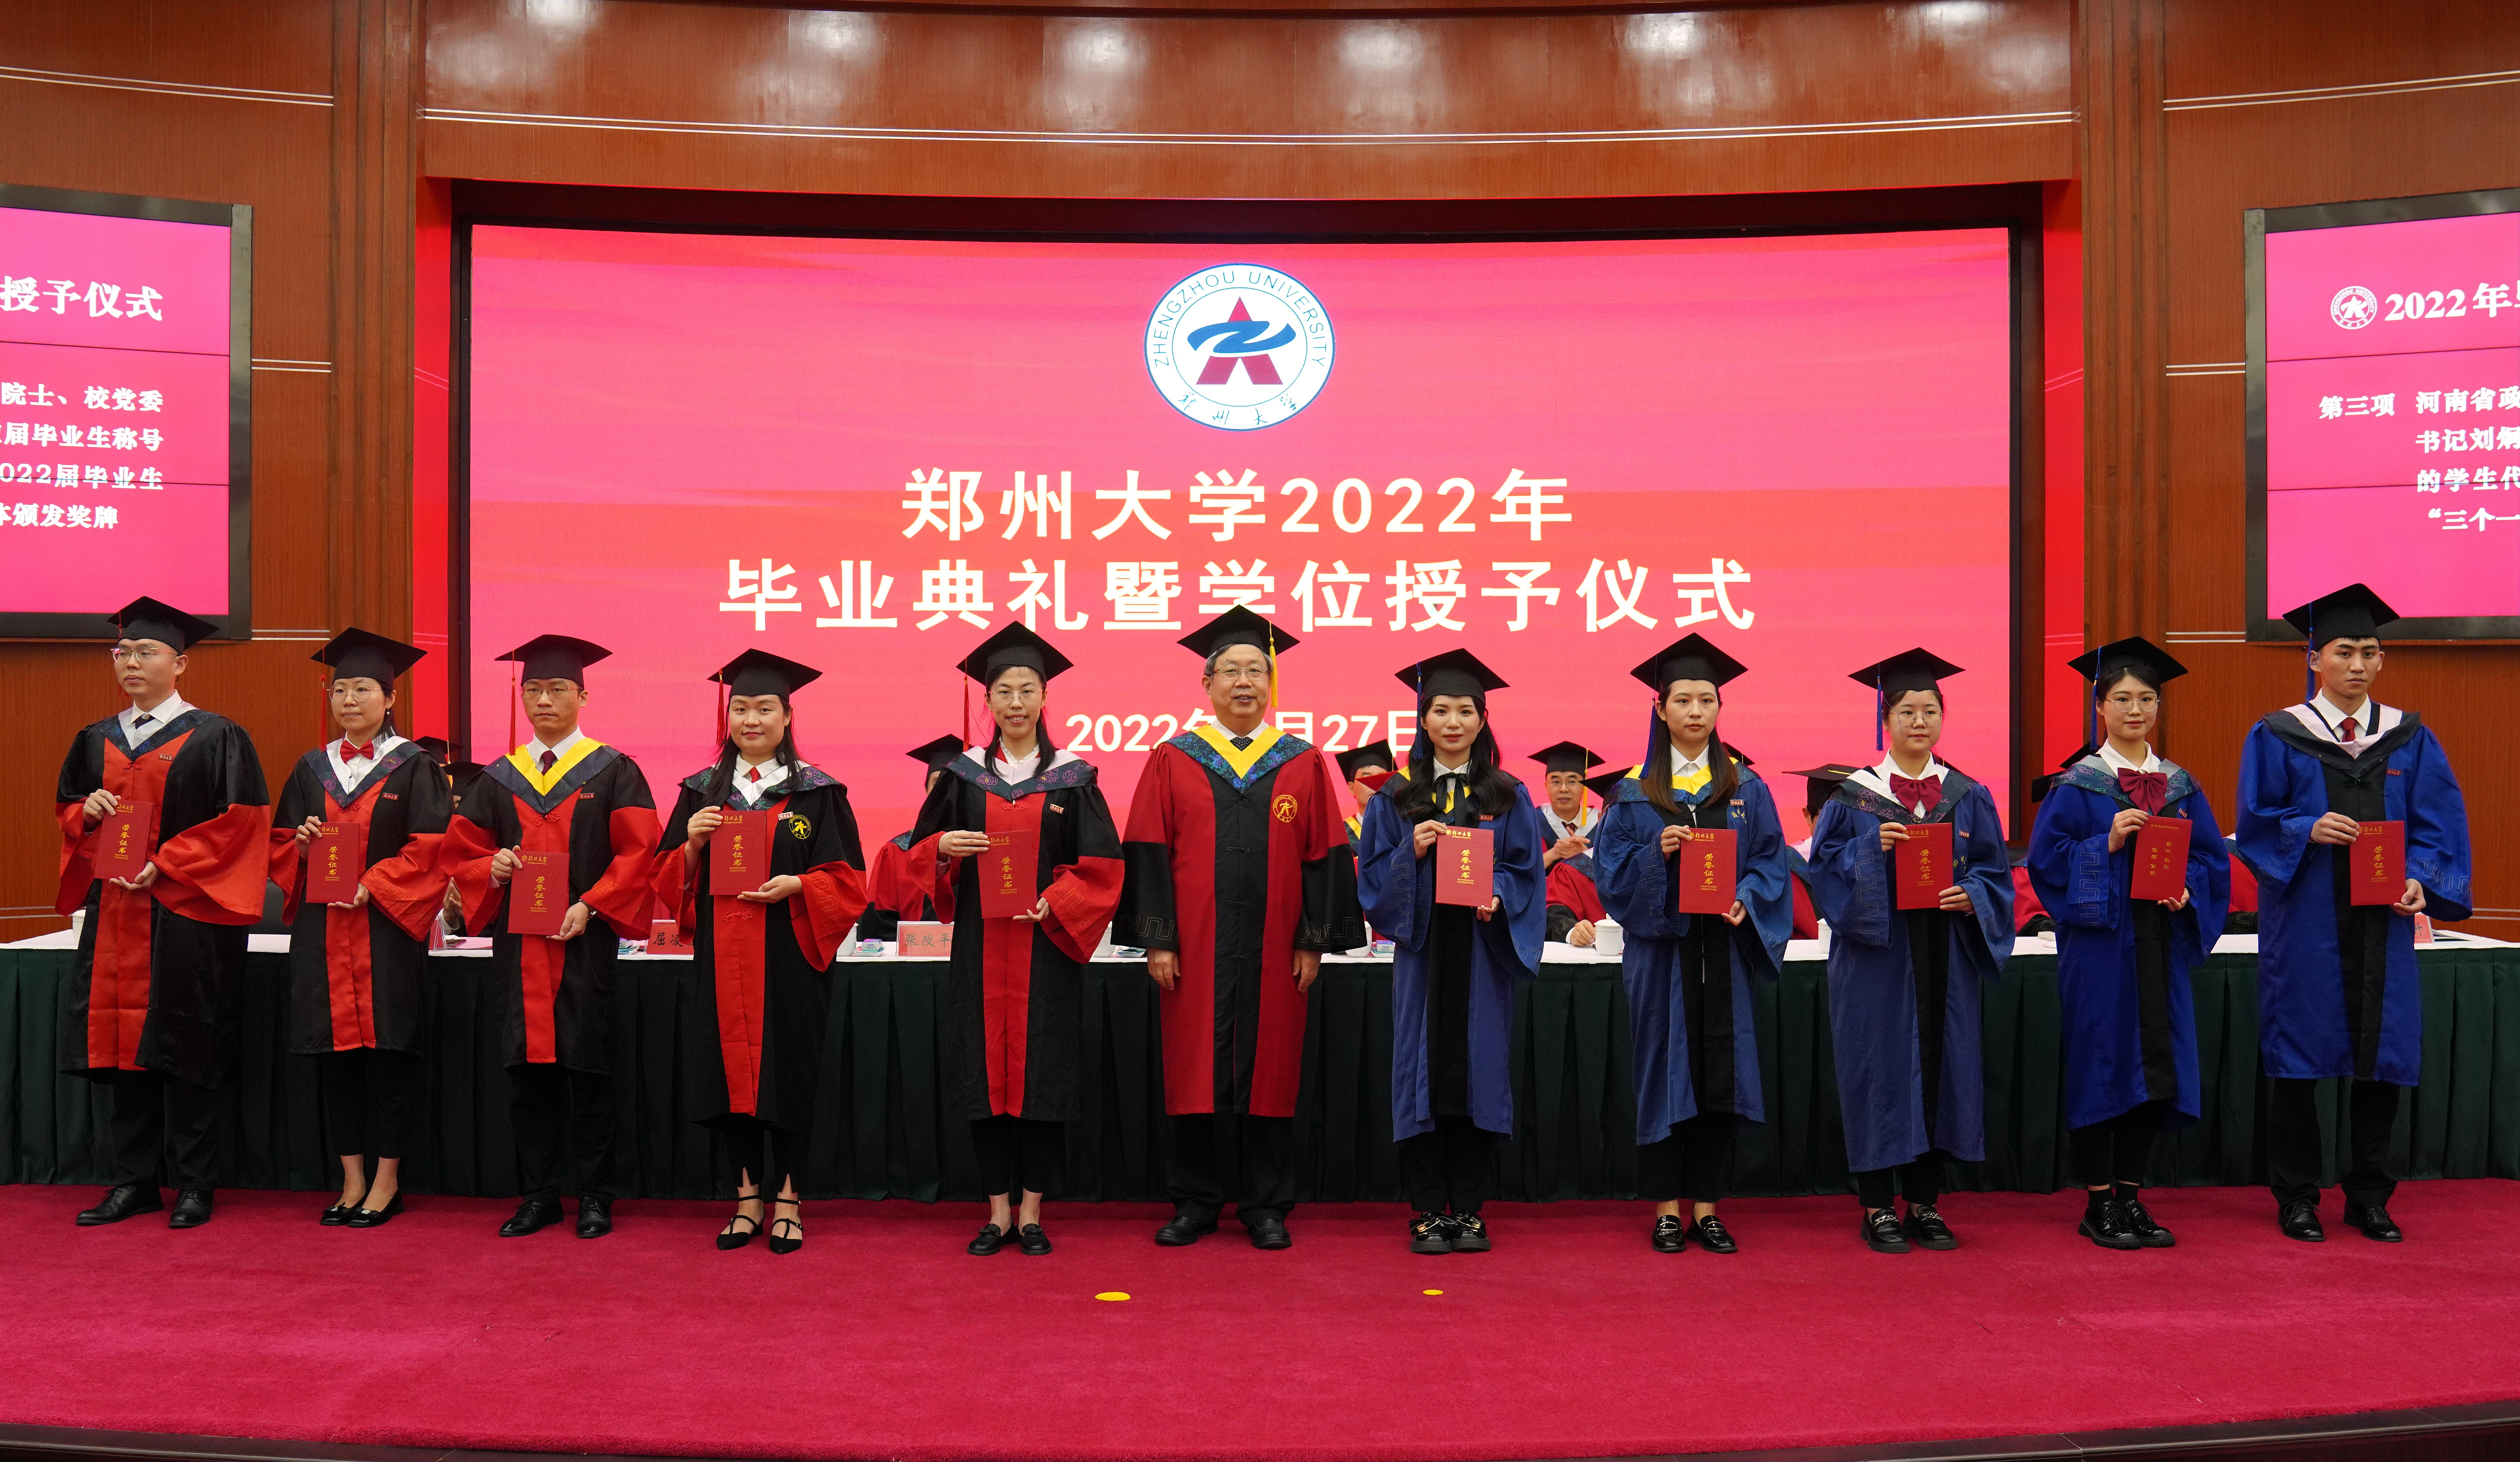 郑州大学举行2022年毕业典礼暨学位授予仪式